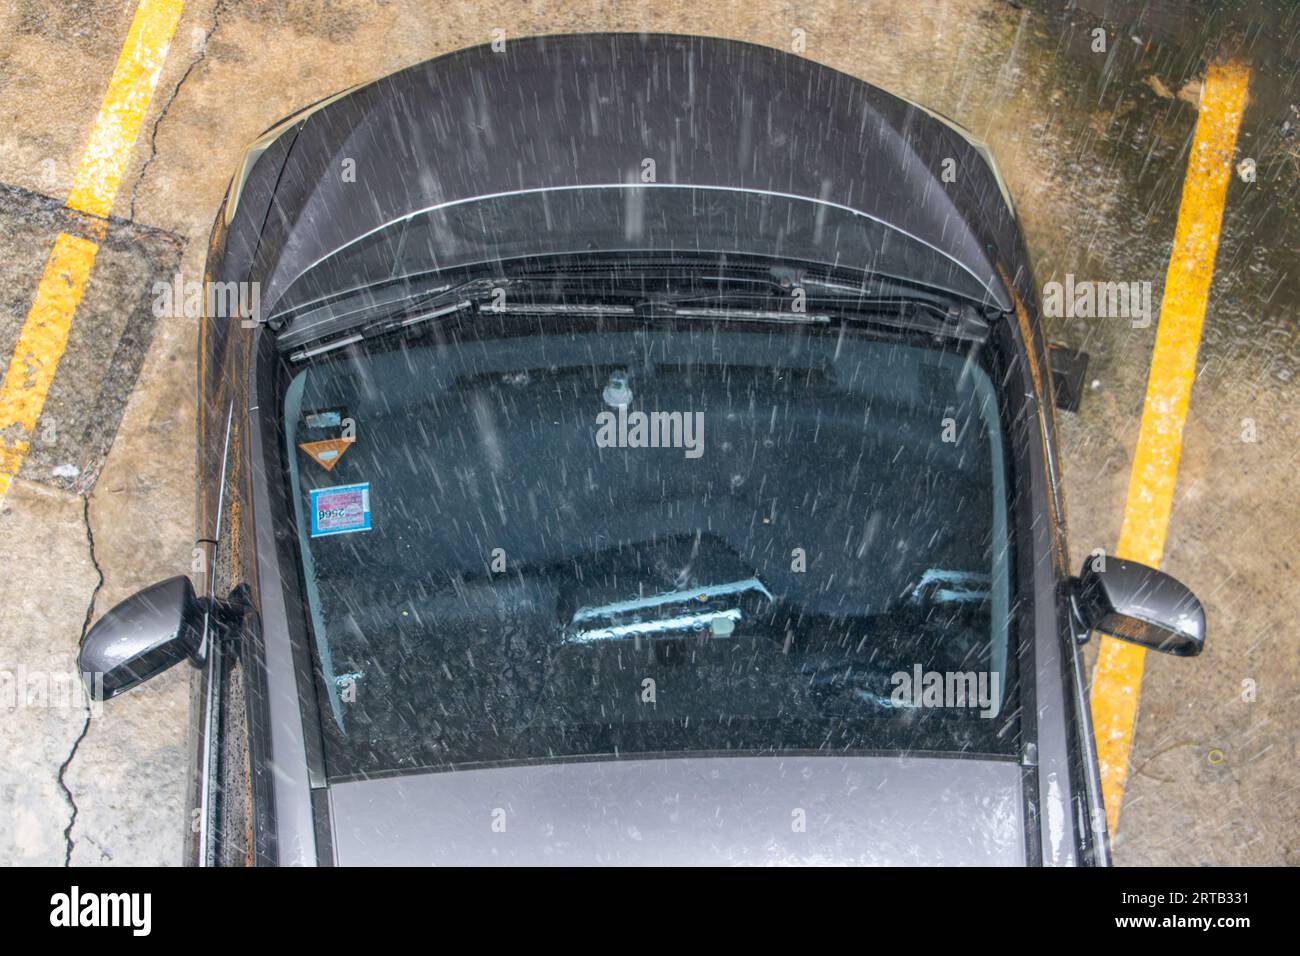 Blick auf die Decke im Auto mit einem transparentem Glas Luke für Lüftung,  Öffnung, so dass sie die Himmel und Wolken in den grauen Kabine der Fahrzeuge  sehen können Stockfotografie - Alamy